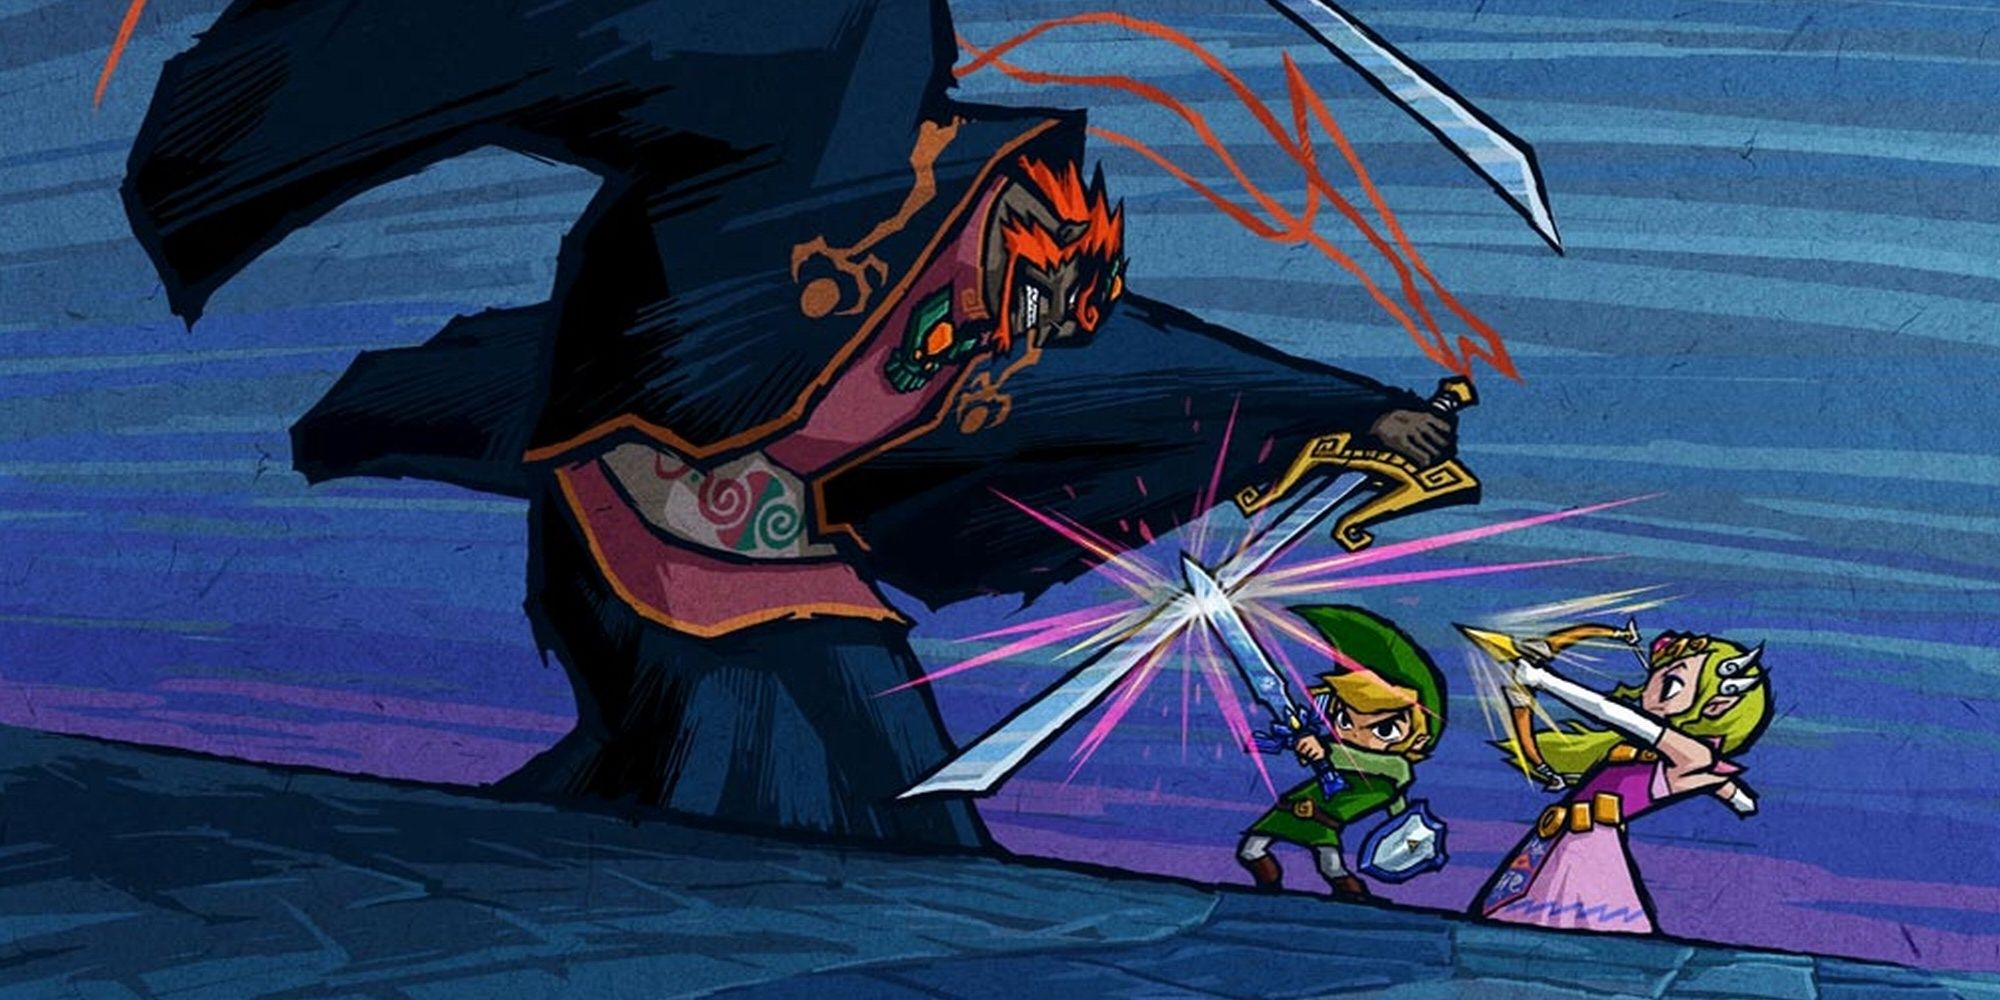 Ganondorf fights Link and Zelda from The Legend of Zelda: Wind Waker video game